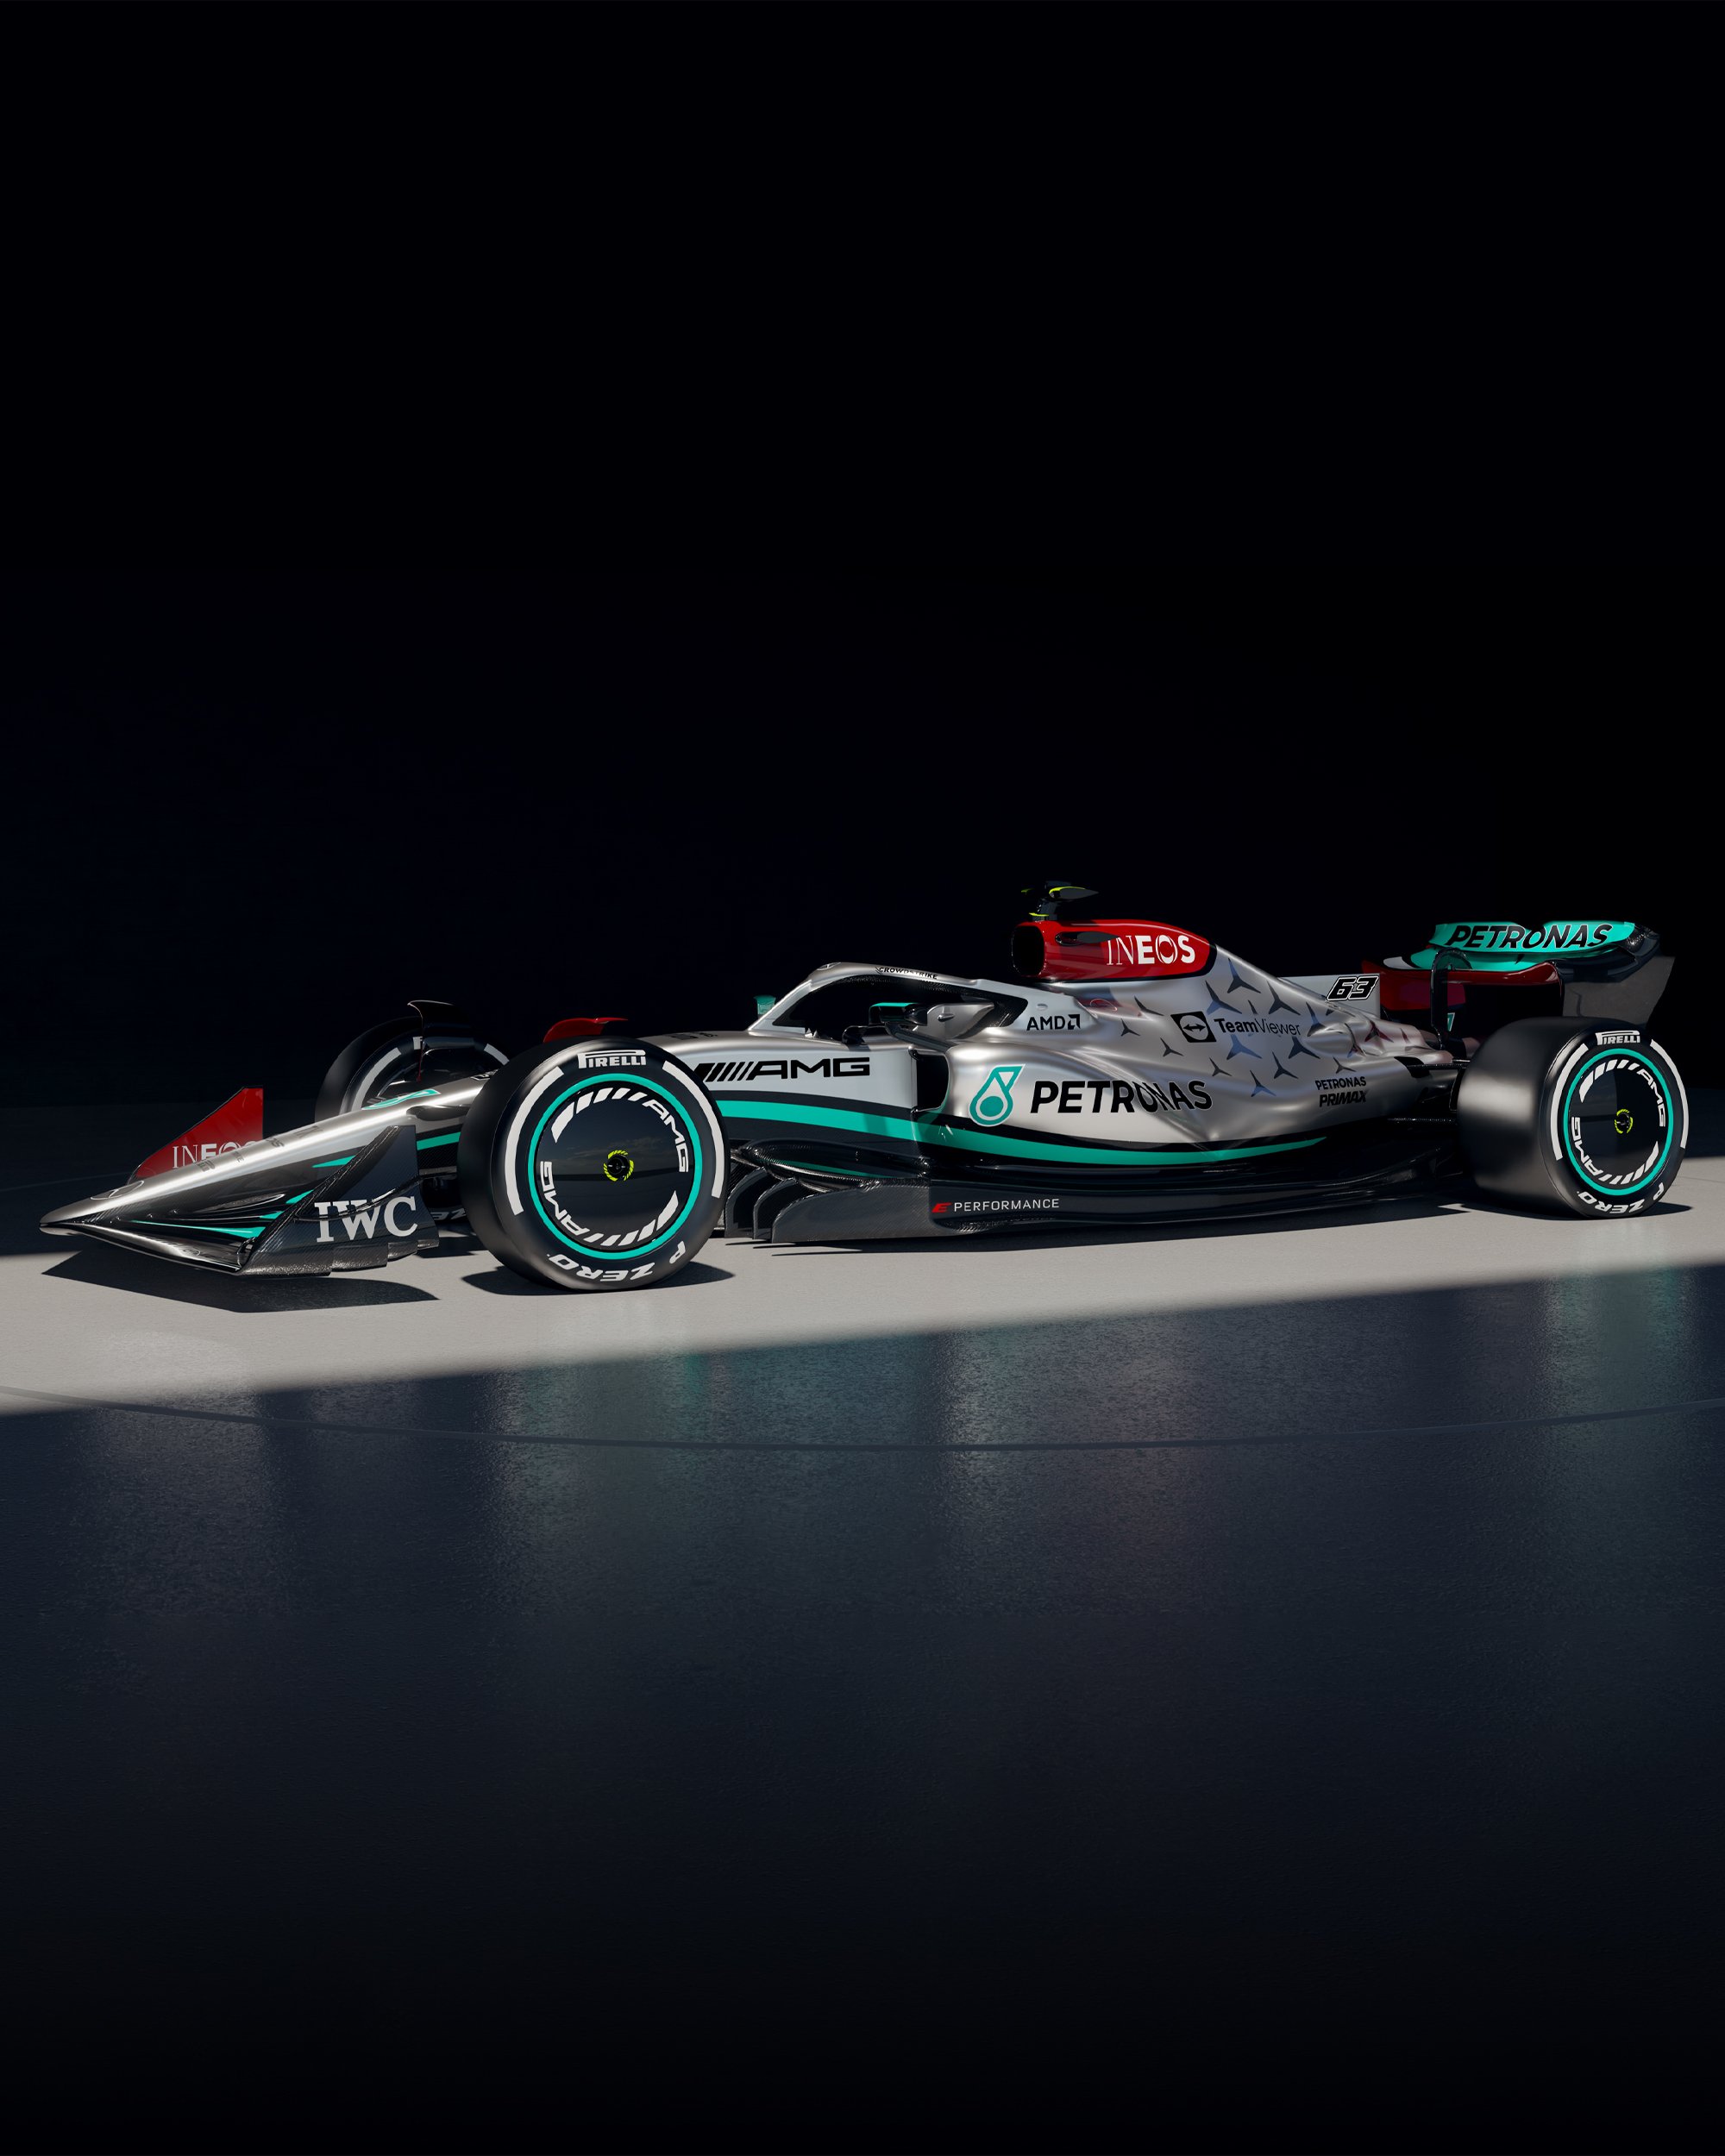 Mercedes F1 svela la nuova vettura del 2022 [FOTO].